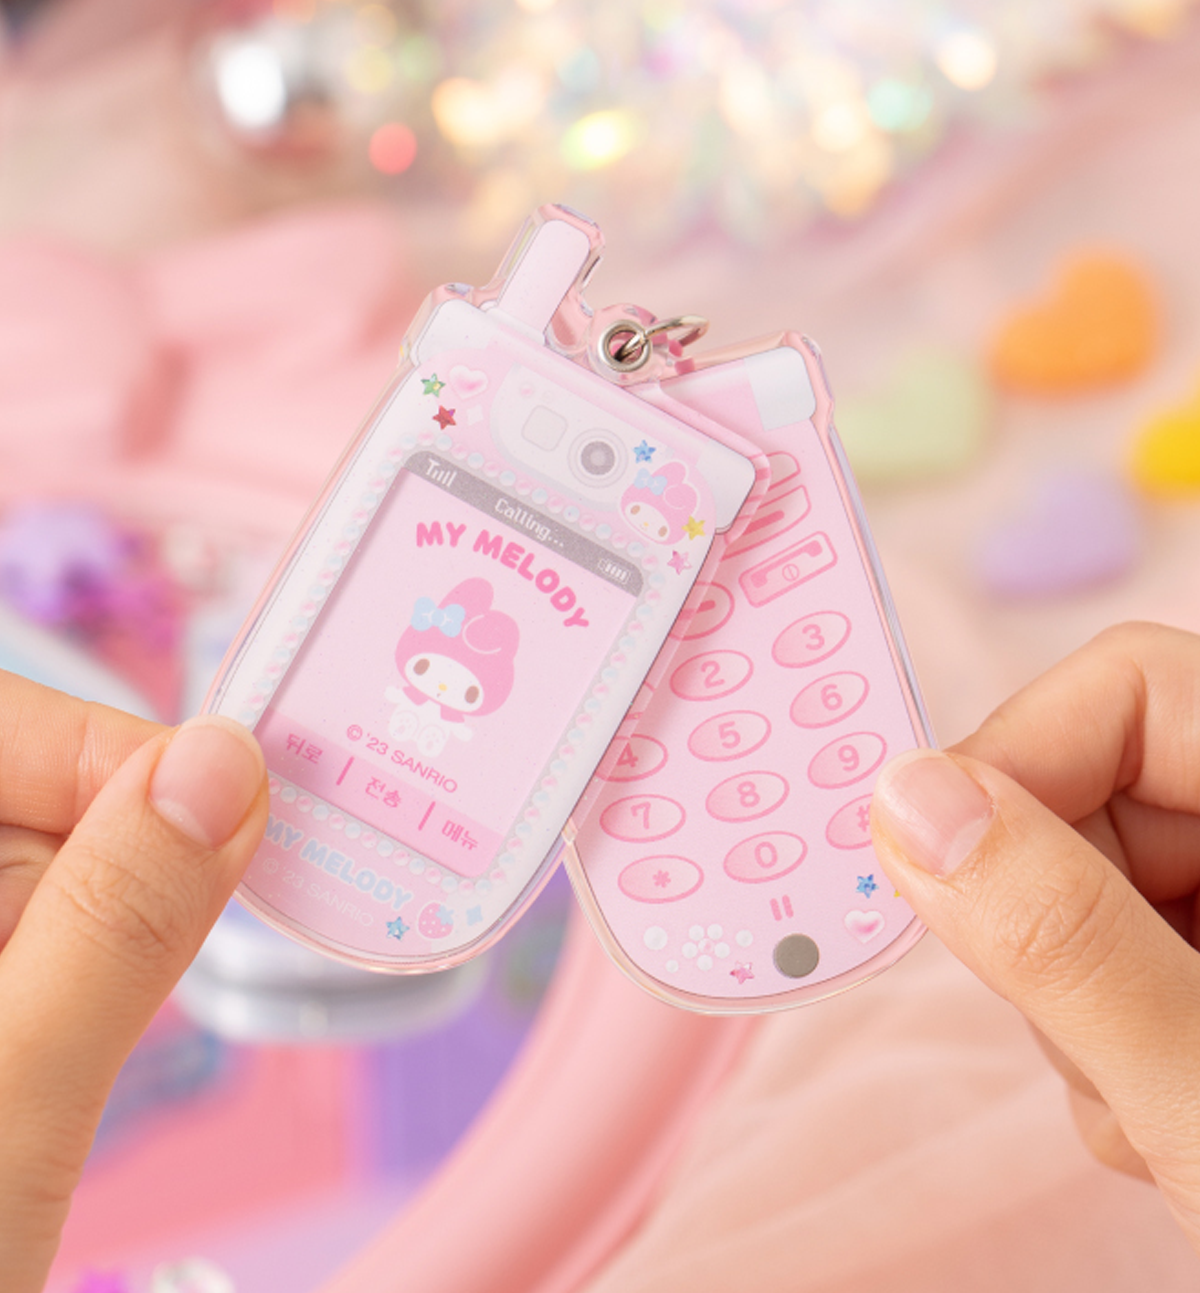 Sanrio Y2K Phone Photo Keyring Charm [4 Designs]